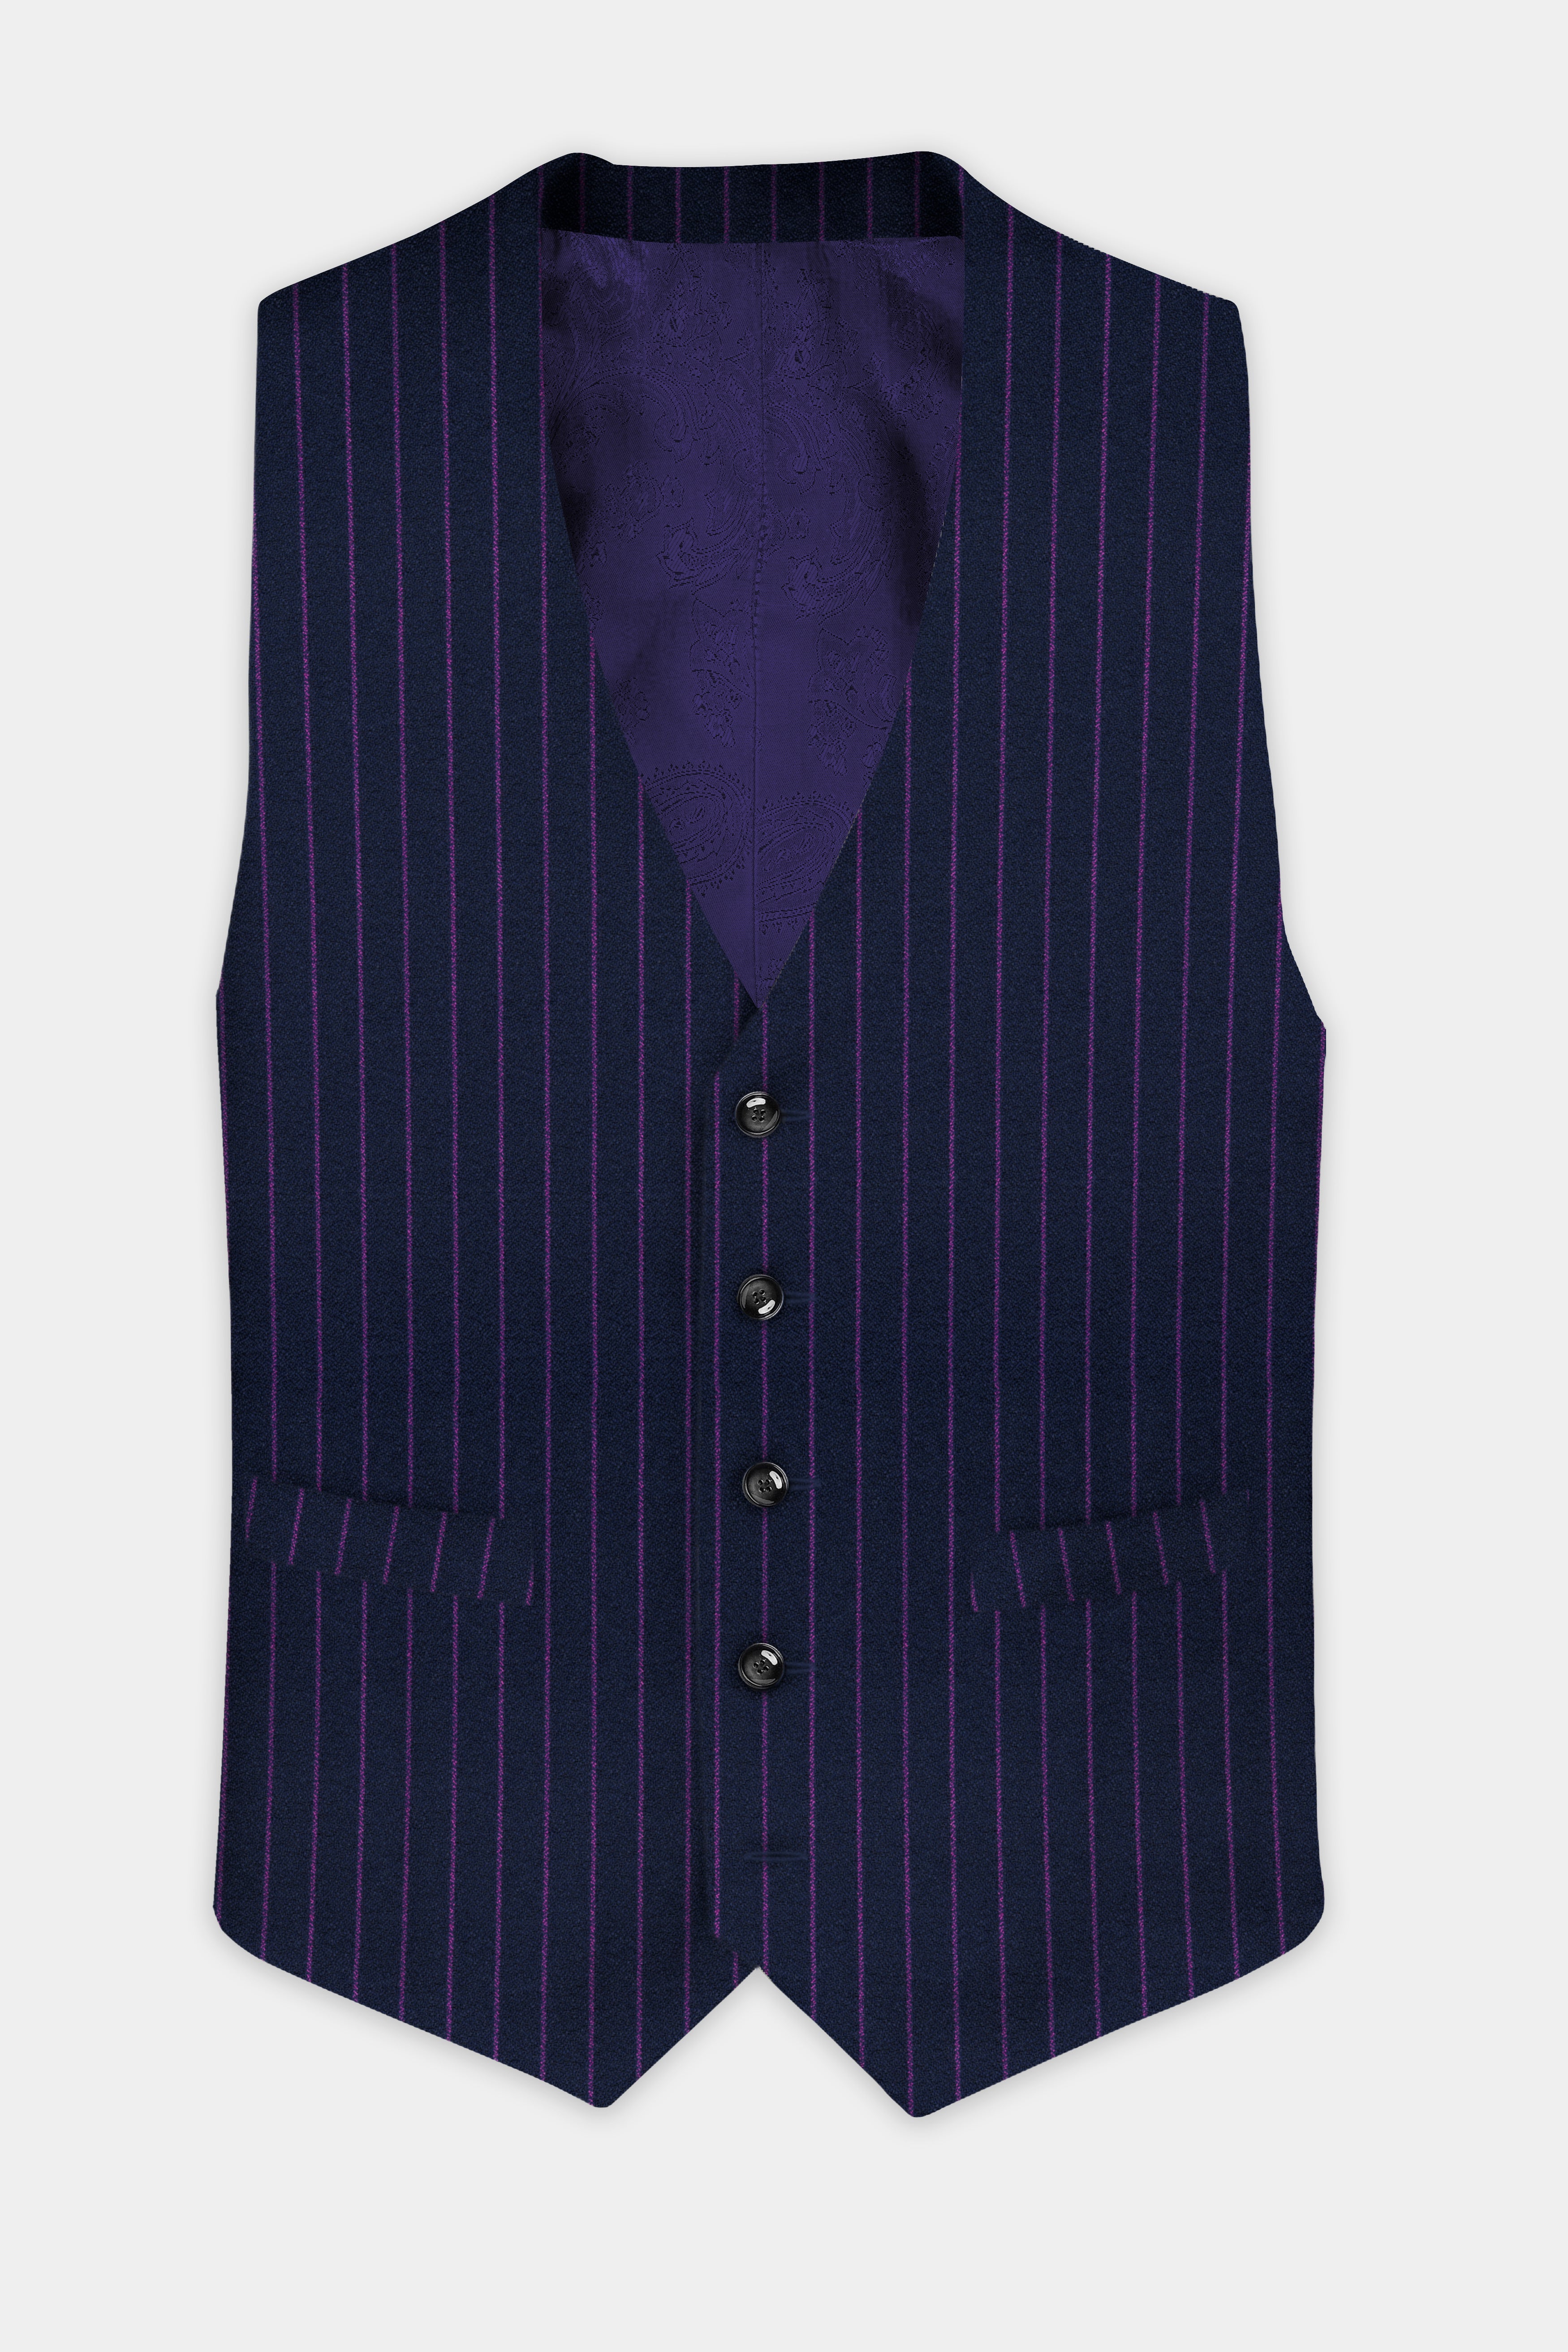 Steel Gray with Grape Purple Striped Wool Blend Waistcoat